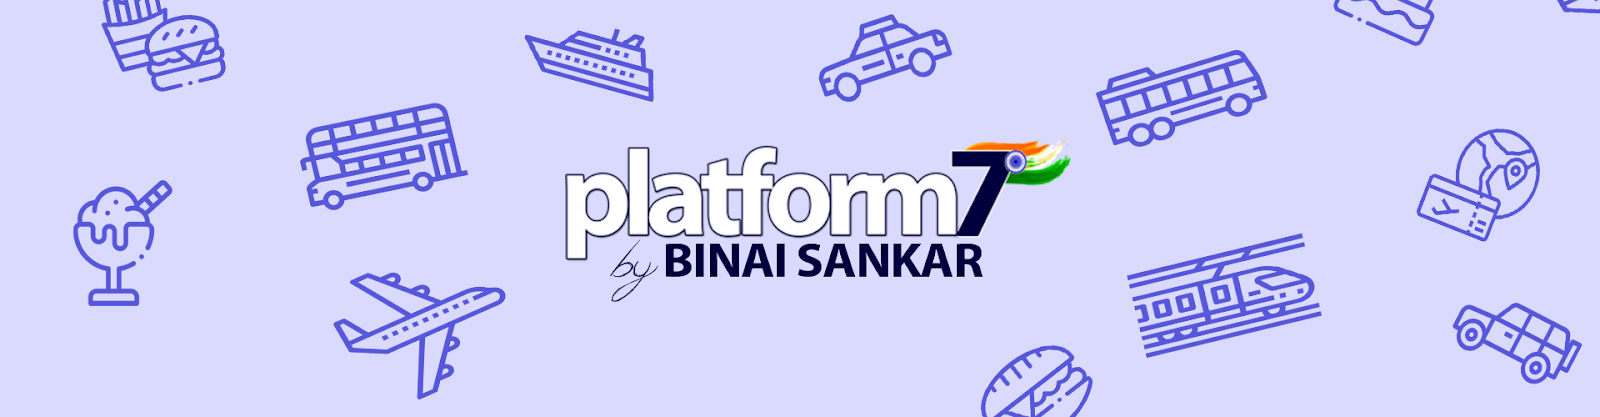 Platform7 by Binai Sankar